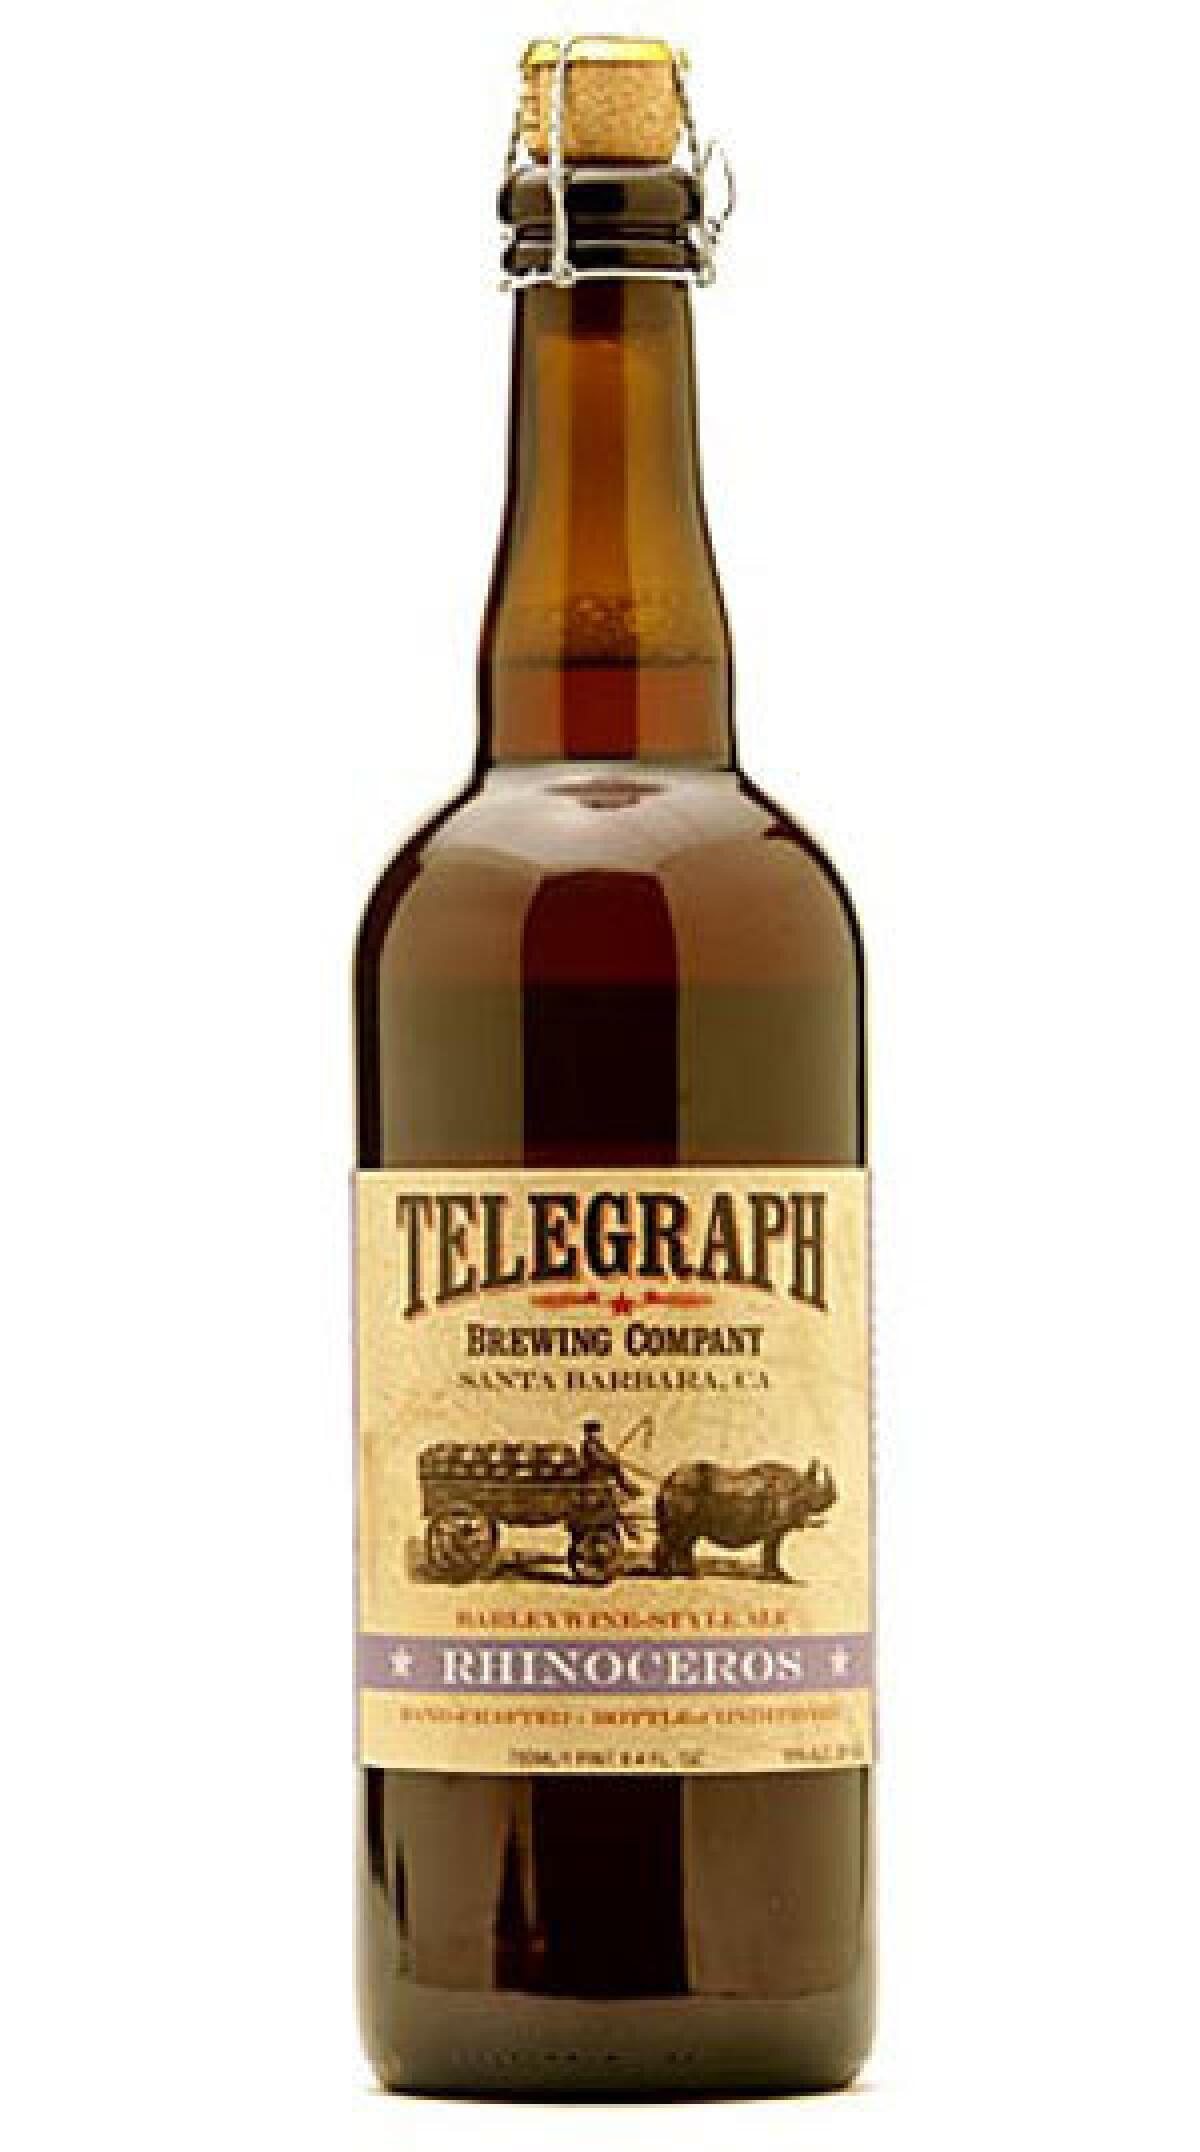 Telegraph Brewing Co. Rhinoceros Barleywine-Style Ale.